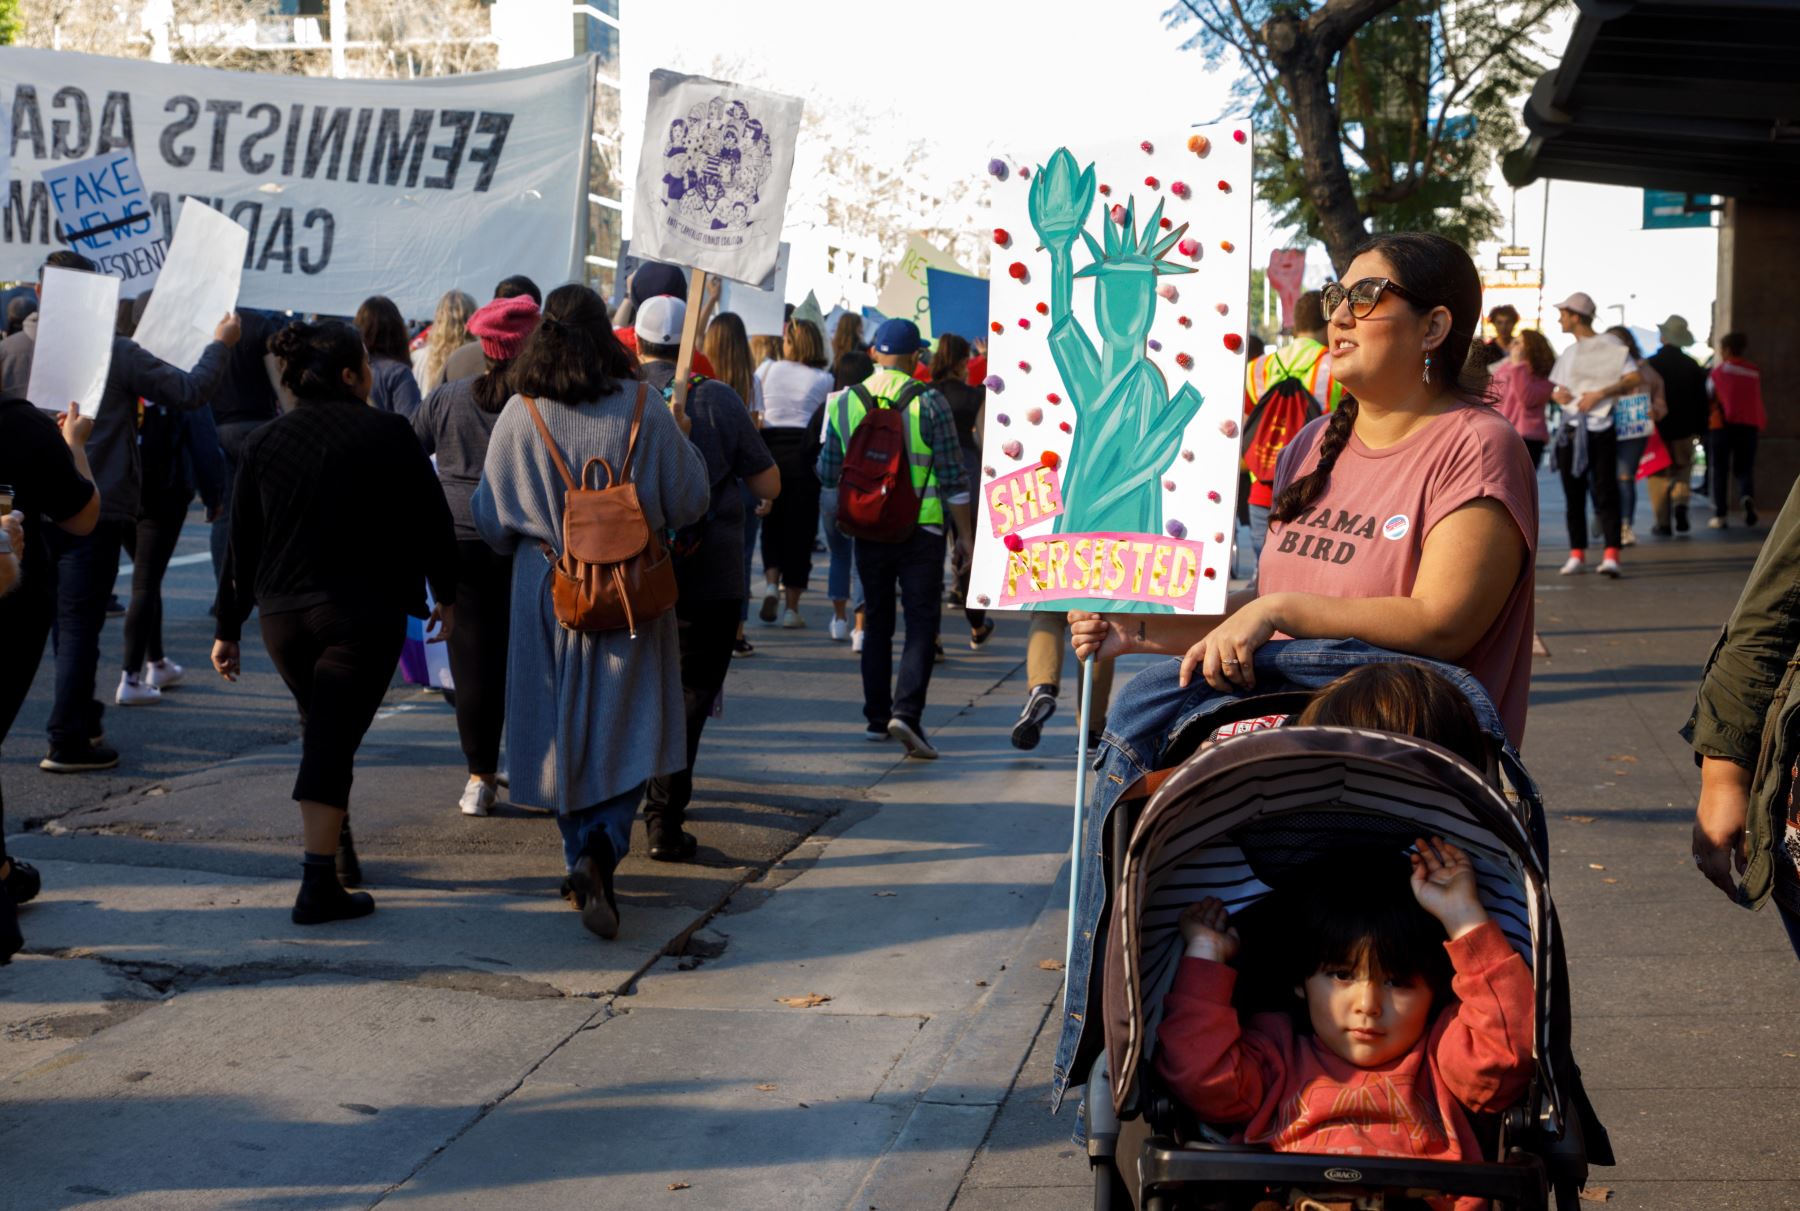 Los Ángeles (Estados Unidos). Miles de personas participaron en la Tercera Marcha Anual de Mujeres en Los Ángeles, California, EE. UU. La organización ha tomado las calles para protestar contra las políticas de la administración Trump.Foto: EFE